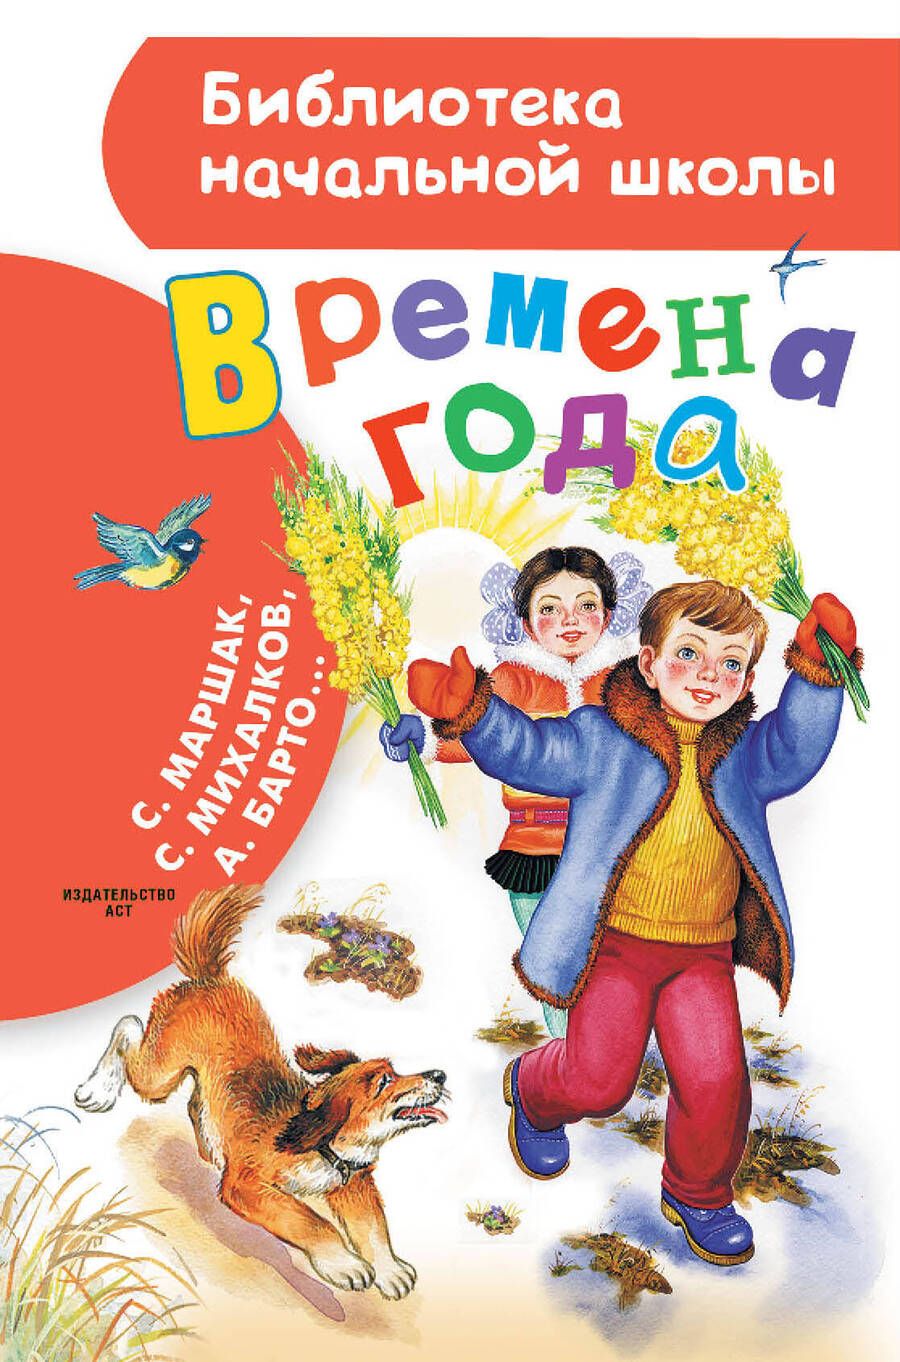 Обложка книги "Маршак, Михалков, Барто: Времена года"